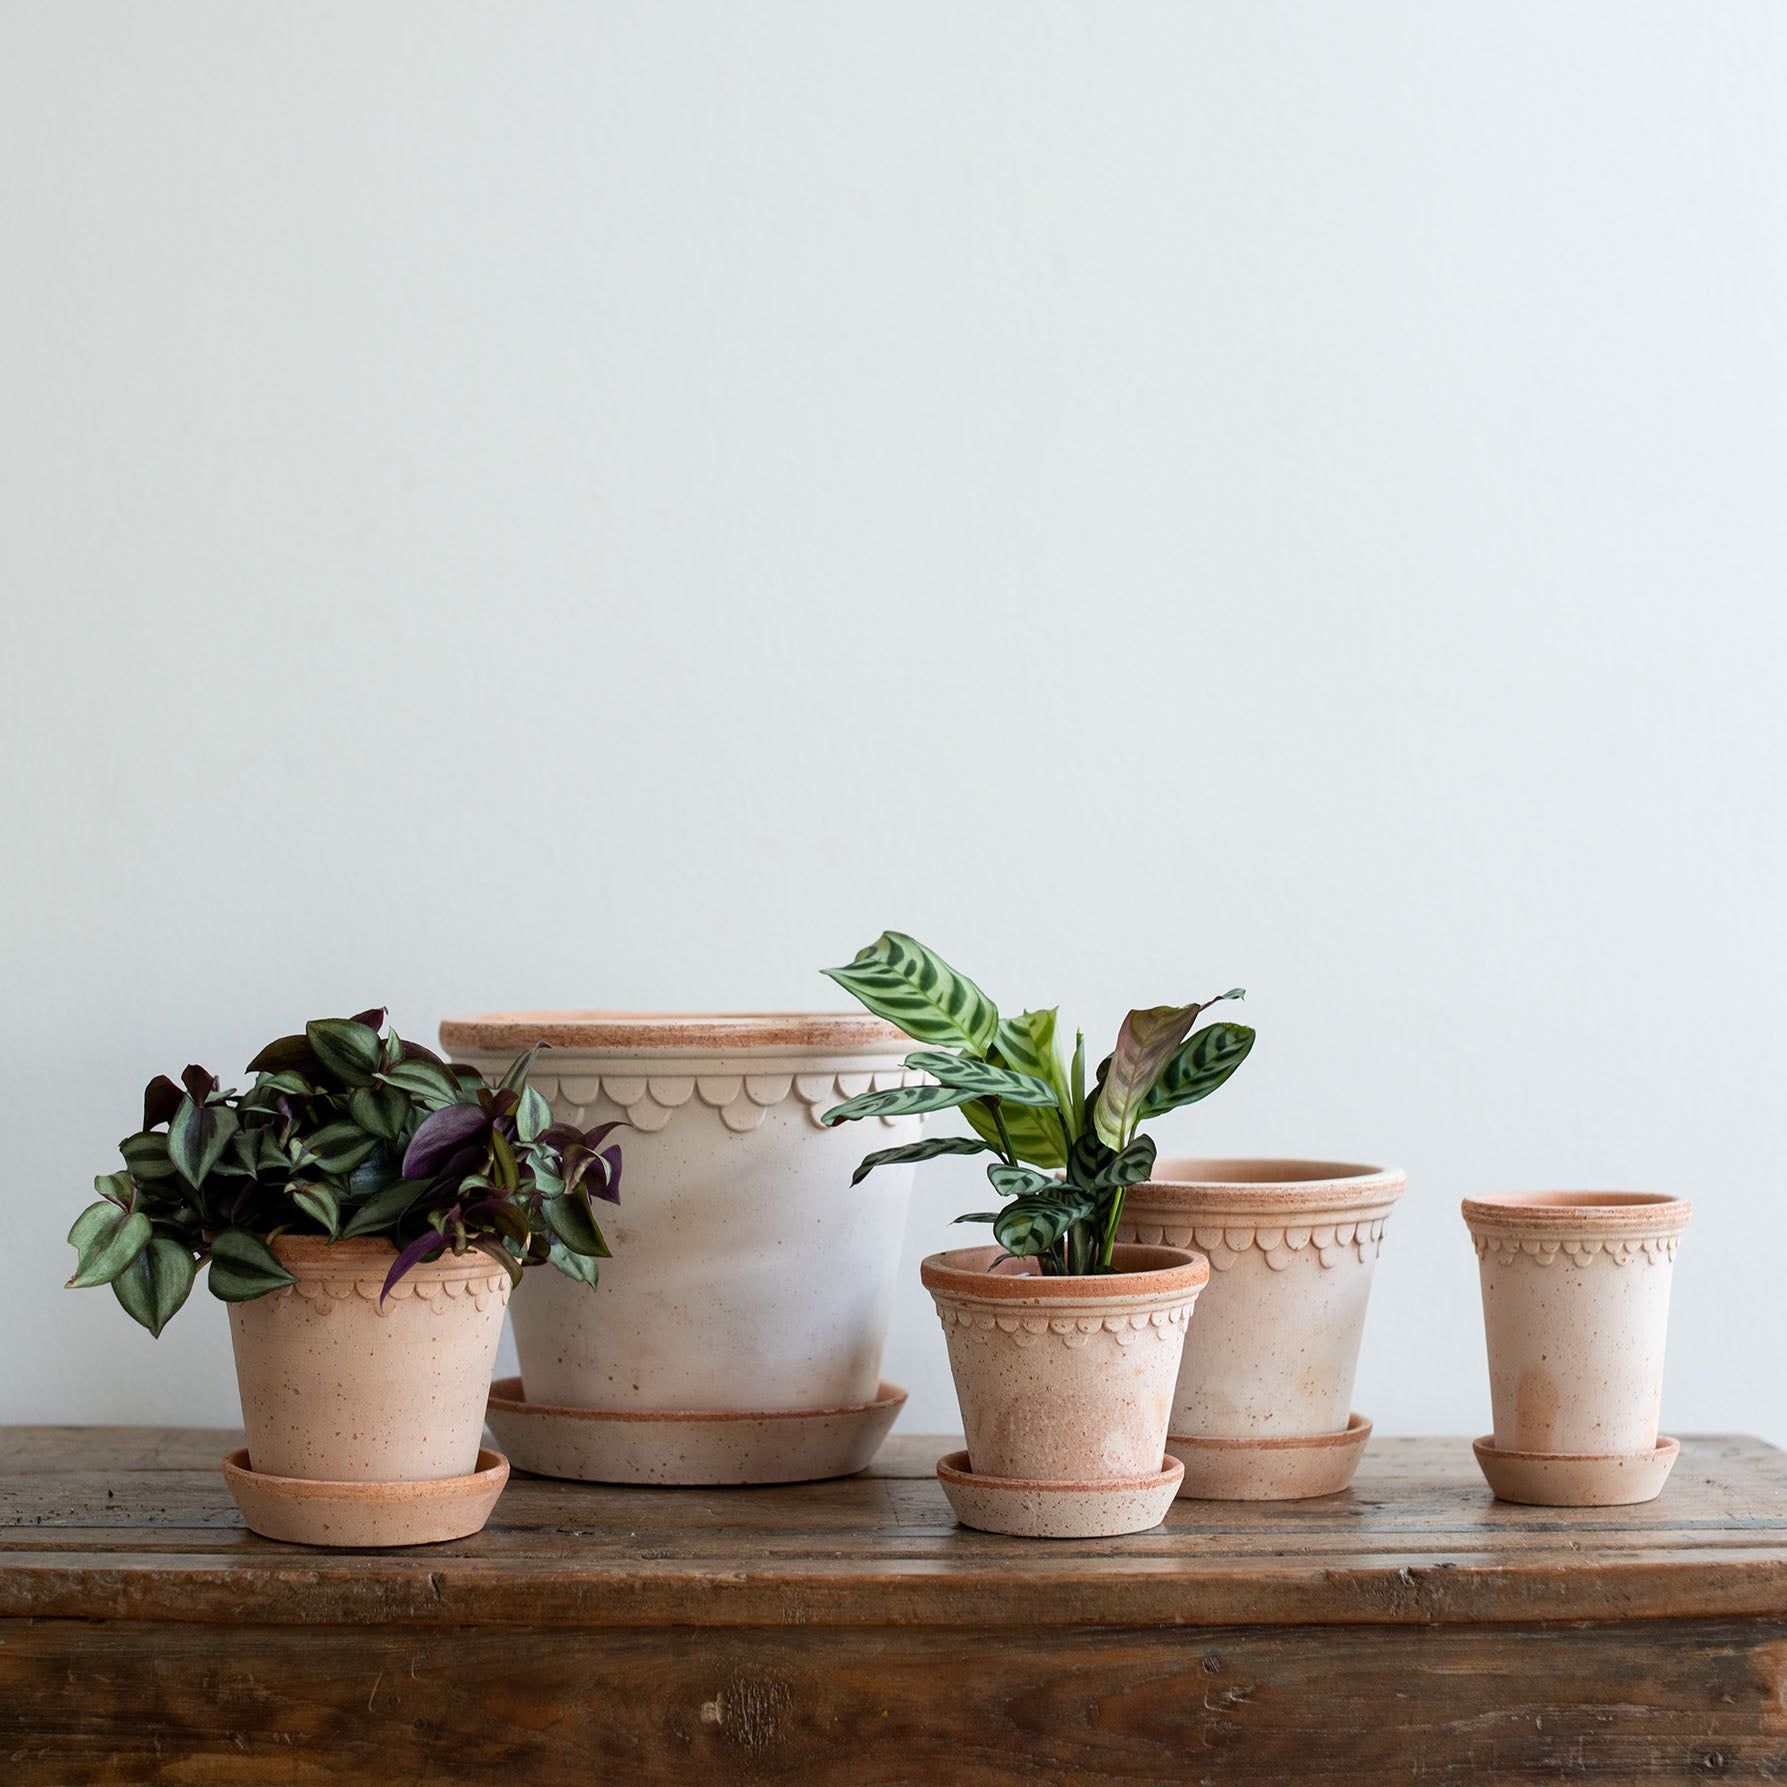 Eine Auswahl an Keramik Blumentopf in rosa mit Untersetzer in verschiedenen Größen. Kopenhagener Topf, der auch als Schlosstopf von Bergs bekannt ist, hergestellt von Bergs Potter. In den Töpfen befinden sich Pflanzen.